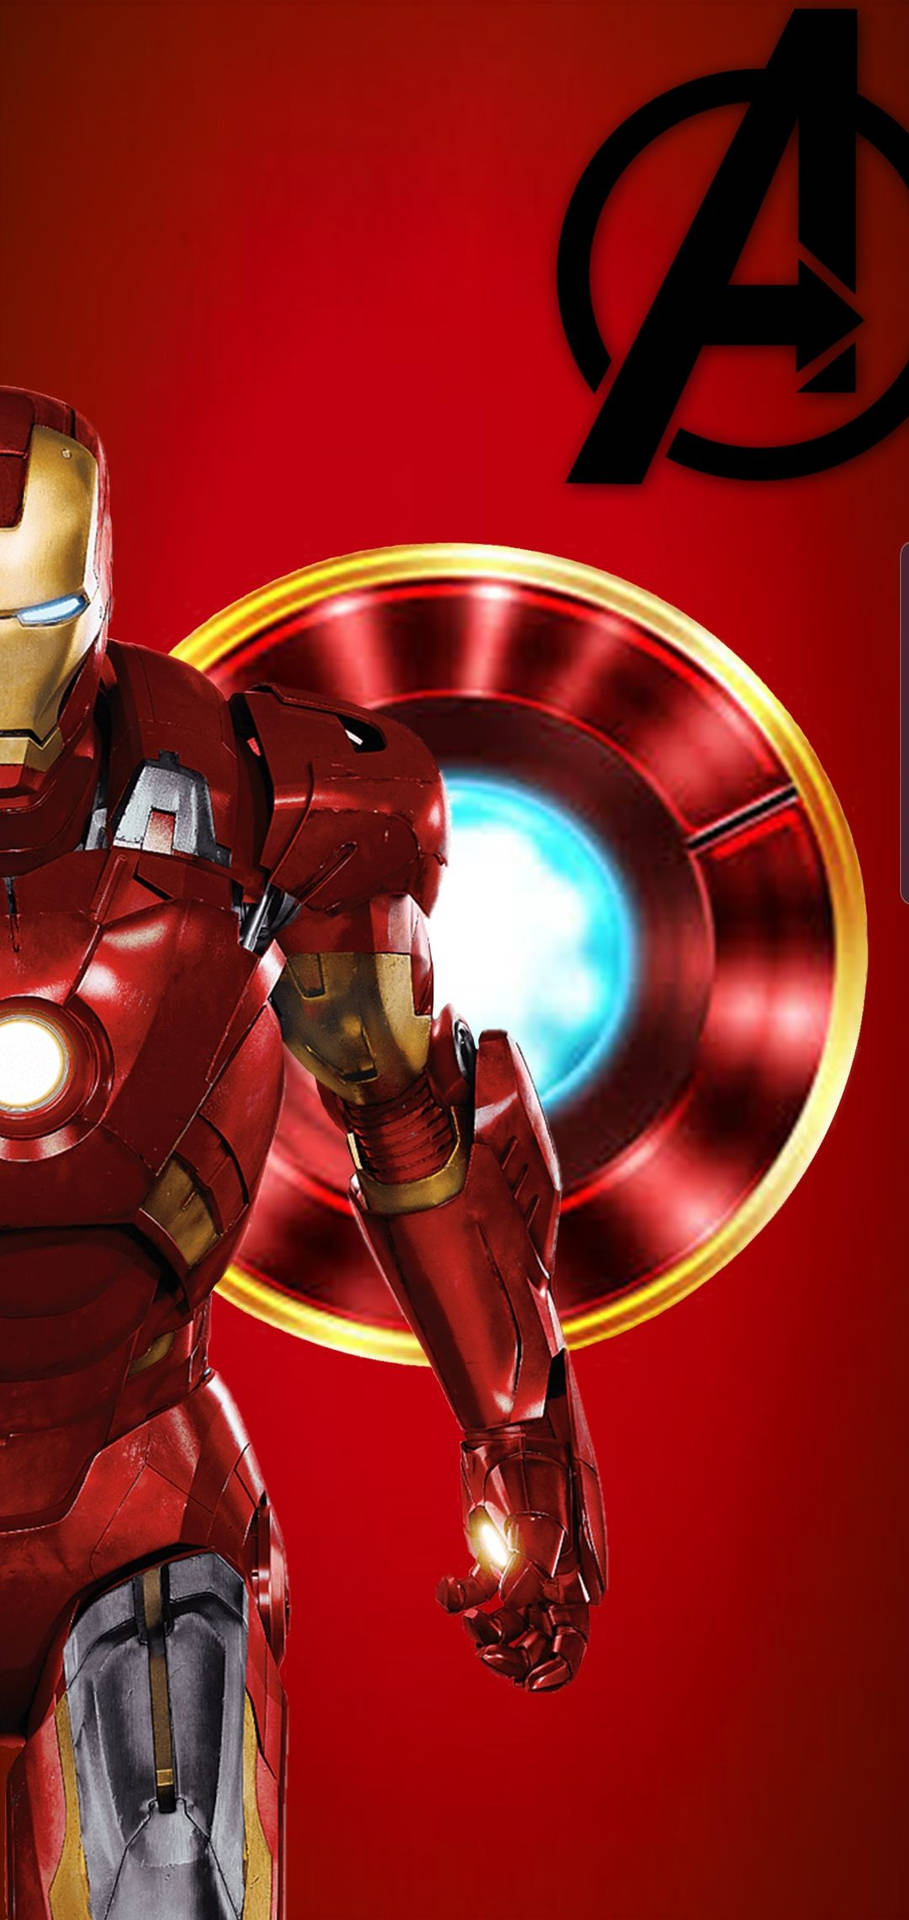 Free Iron Man Phone Wallpaper Downloads, [100+] Iron Man Phone Wallpapers  for FREE 